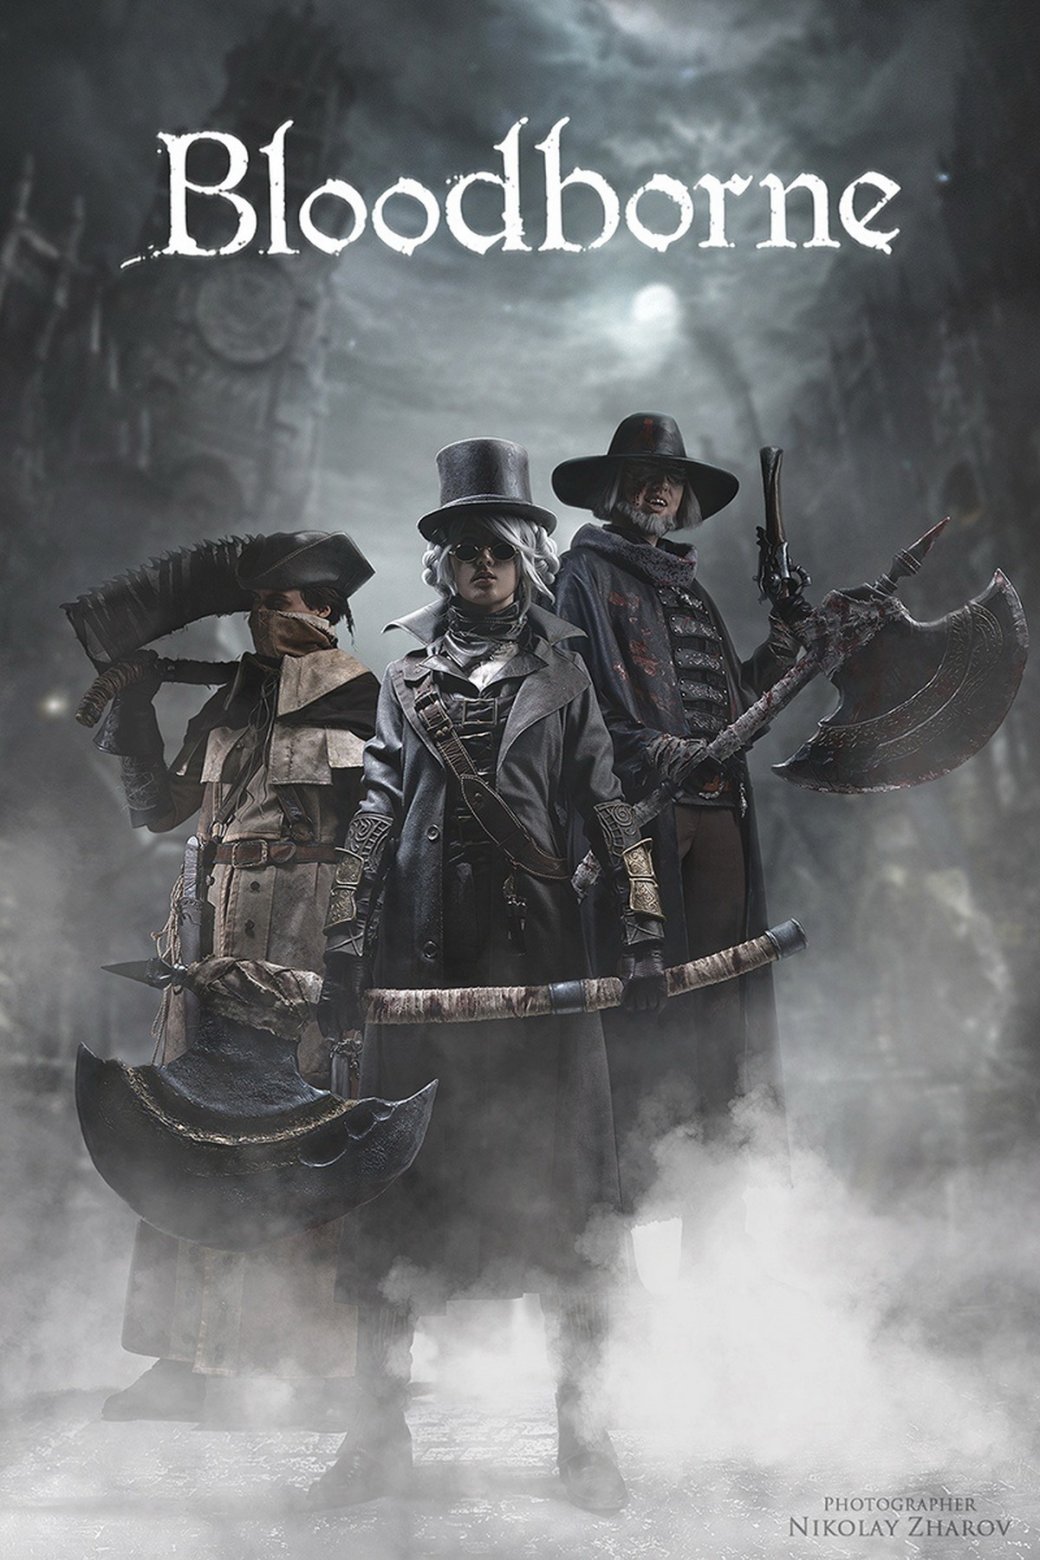 Галерея Трое косплееров показали аутентичный косплей на героев из Bloodborne - 9 фото